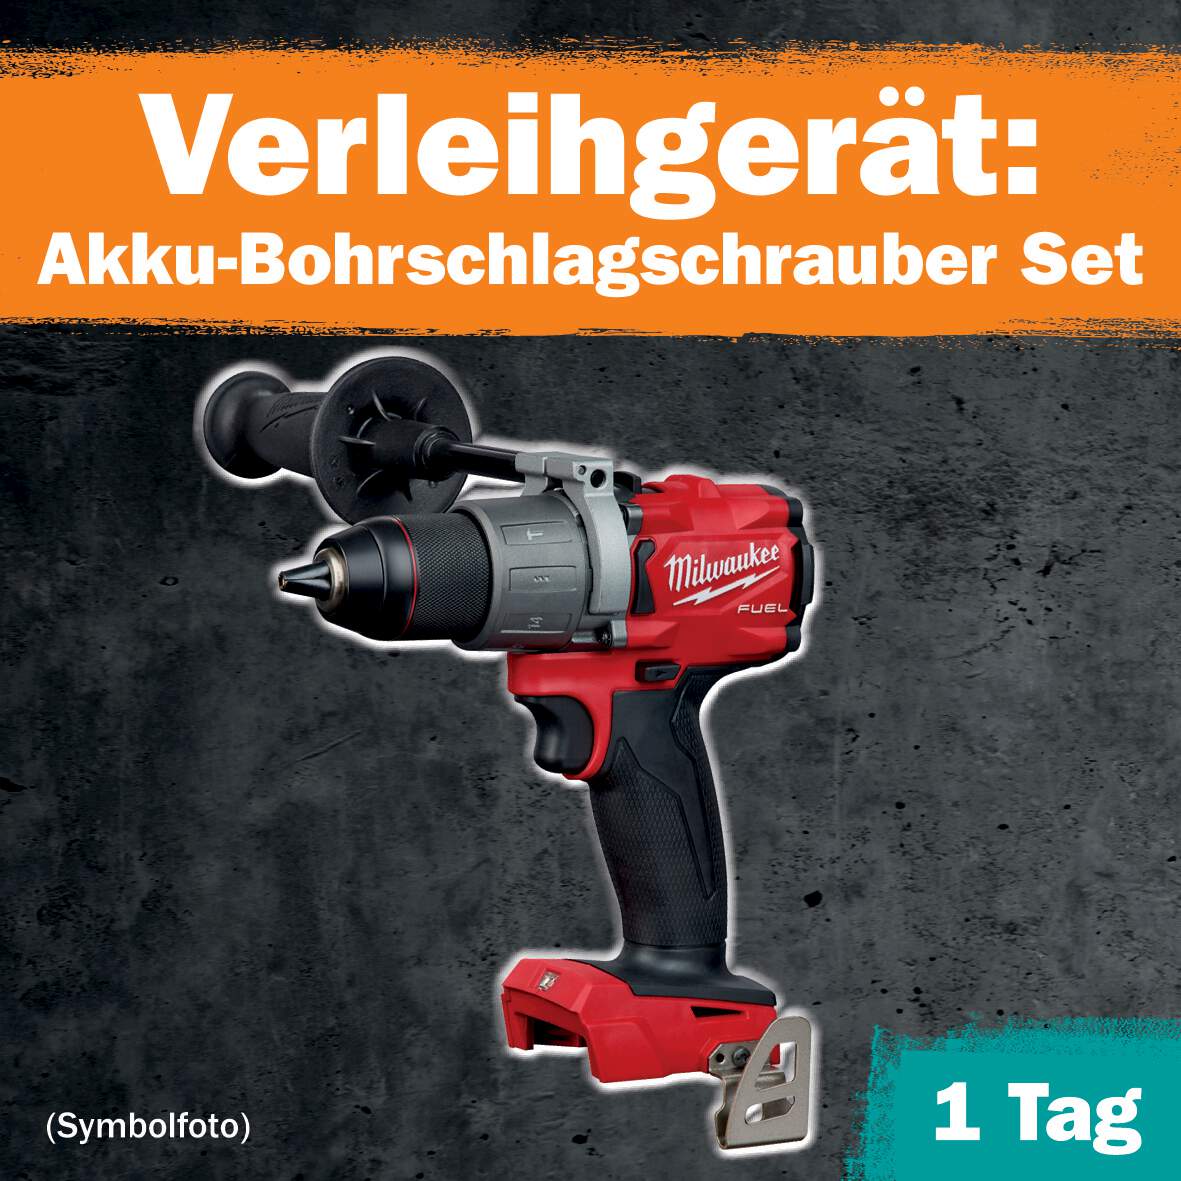 1288681 - Akku-Bohrschlagschrauber Set 1 Tag Leihdauer